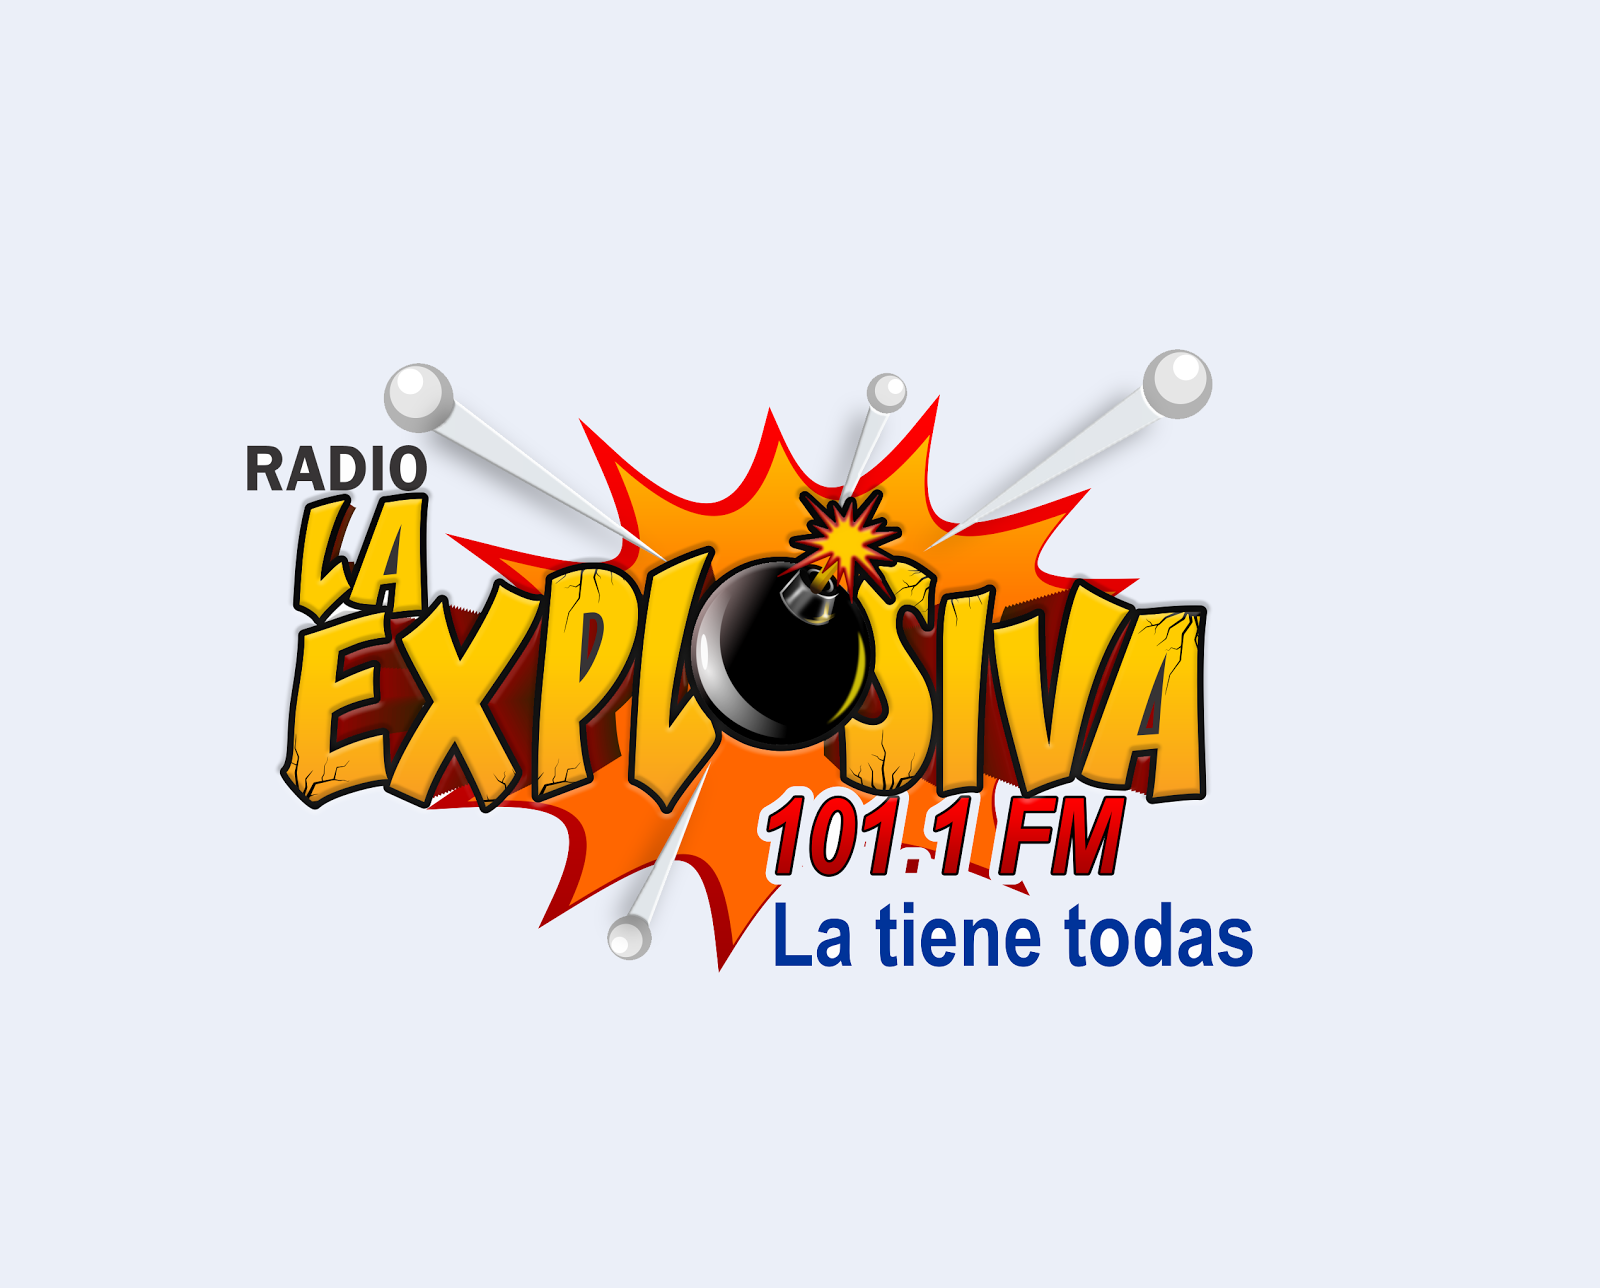 Radio La Explosiva 101.1Fm  EN VIVO